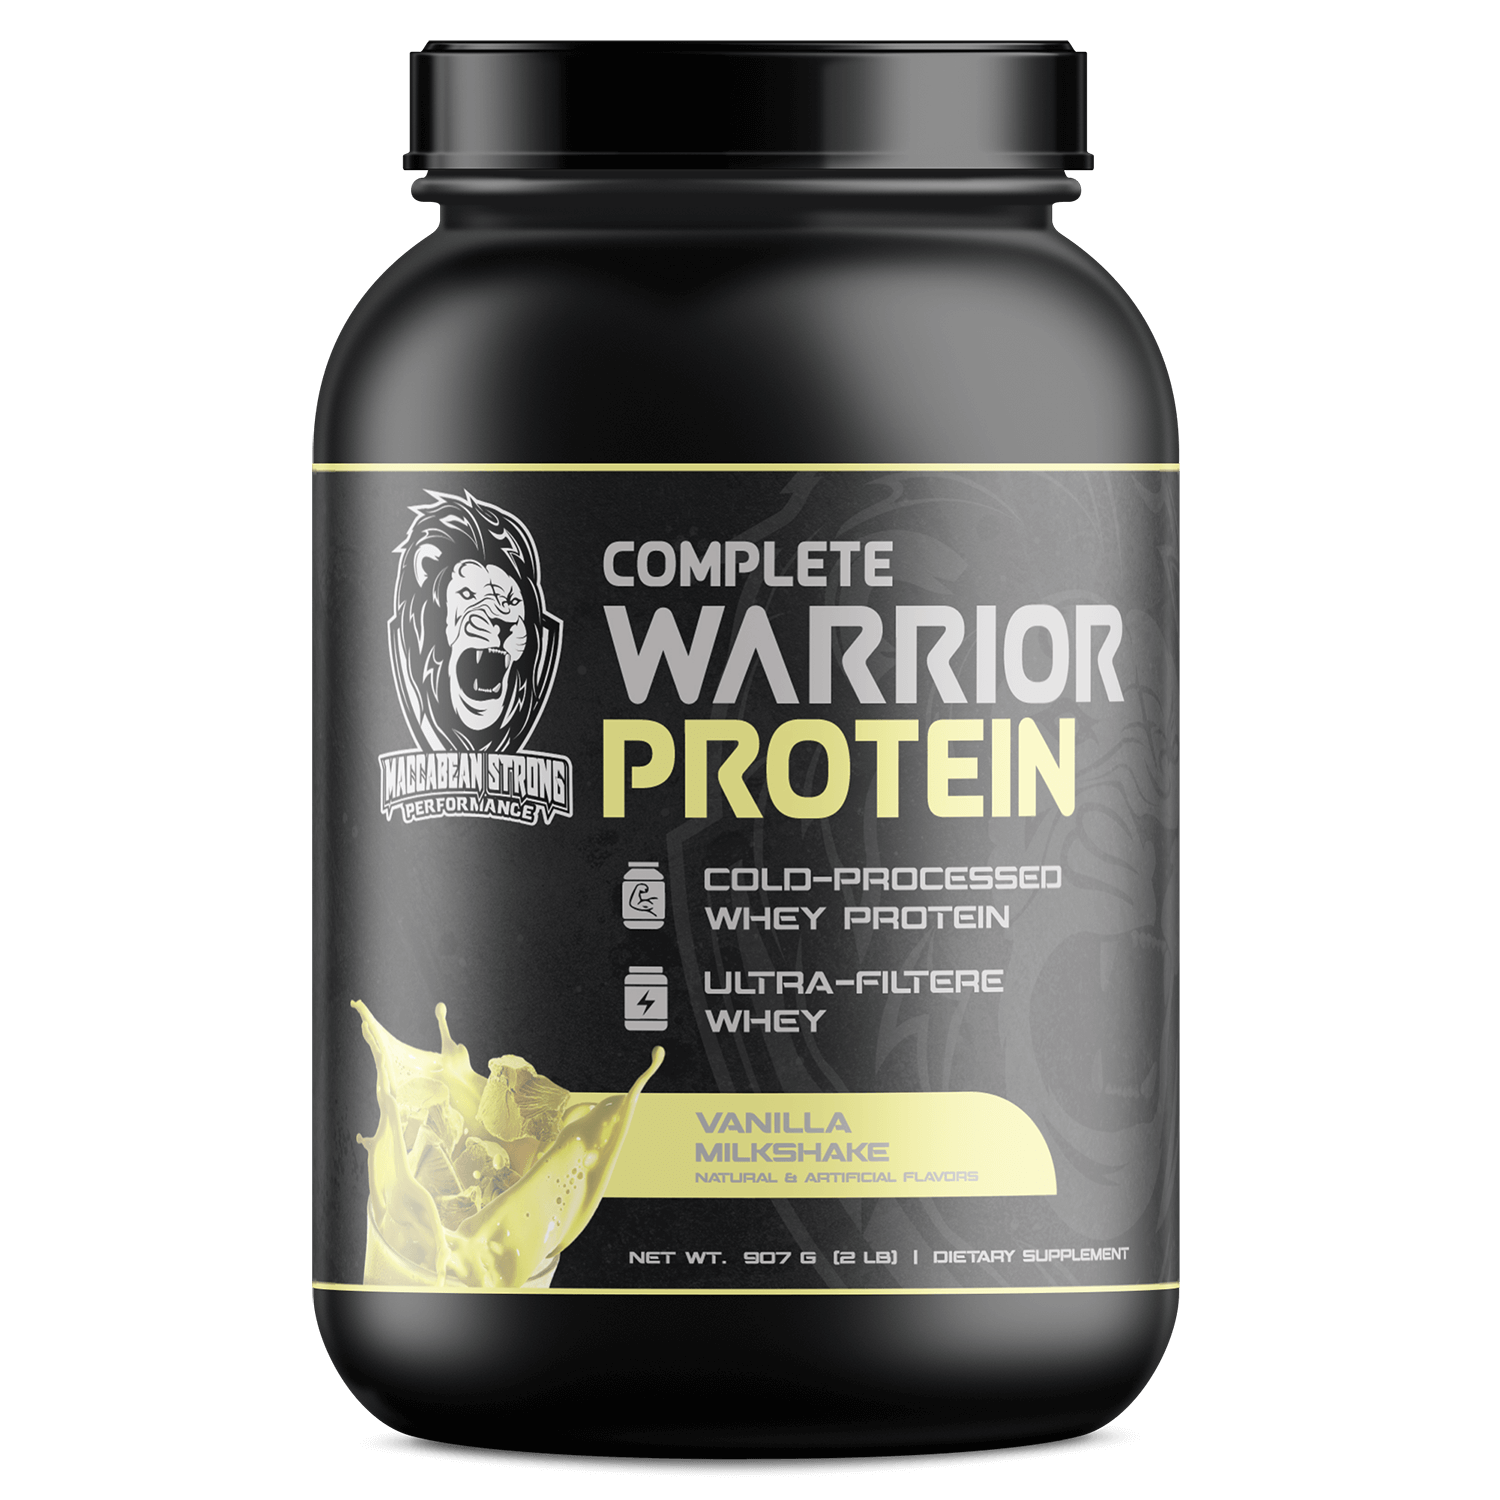 Complete Warrior Protein